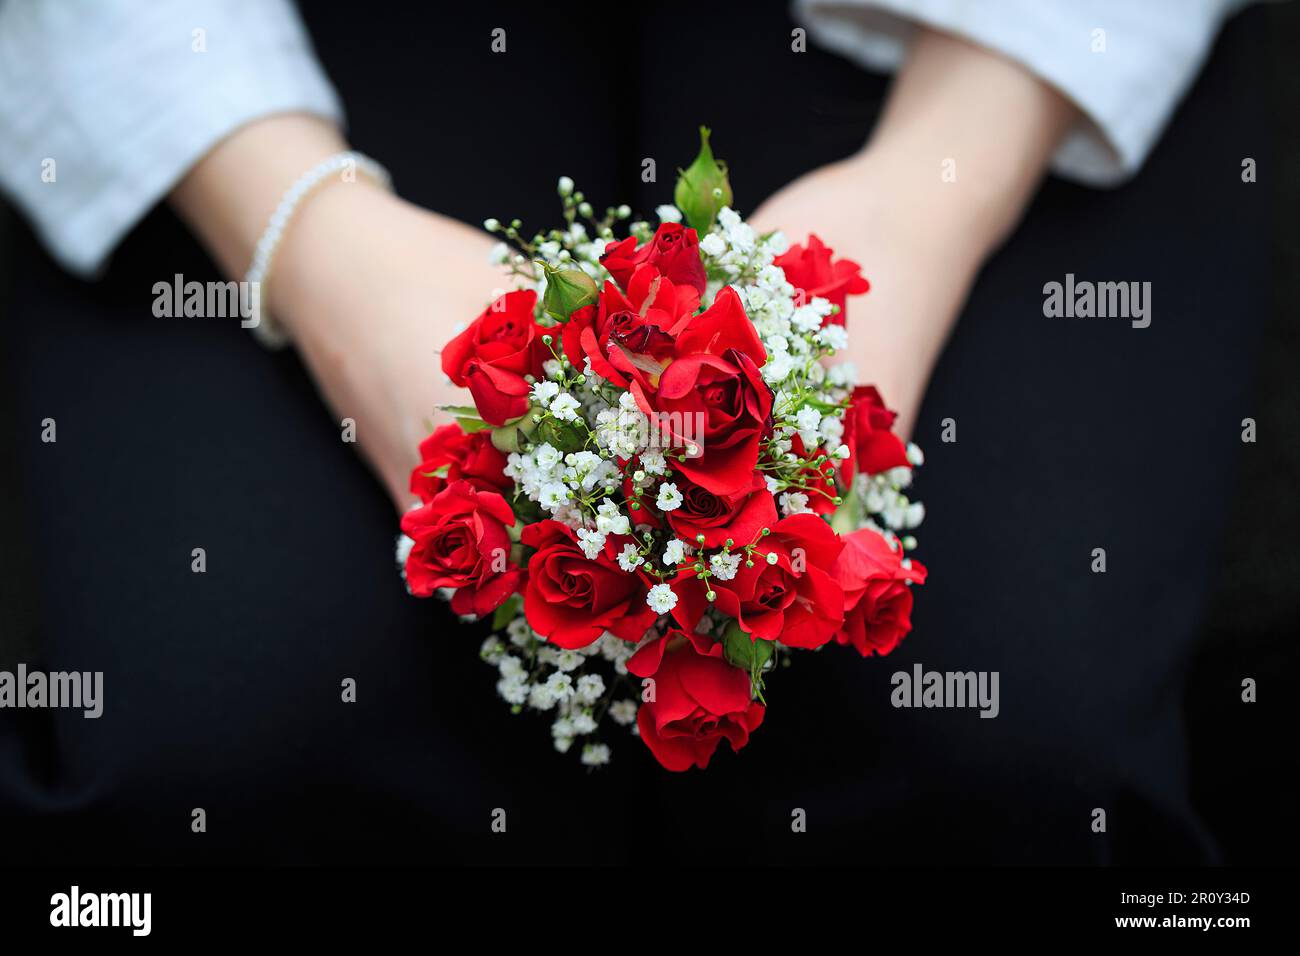 zwei Hände halten einen kleinen roten Rosenstrauß Stock Photo